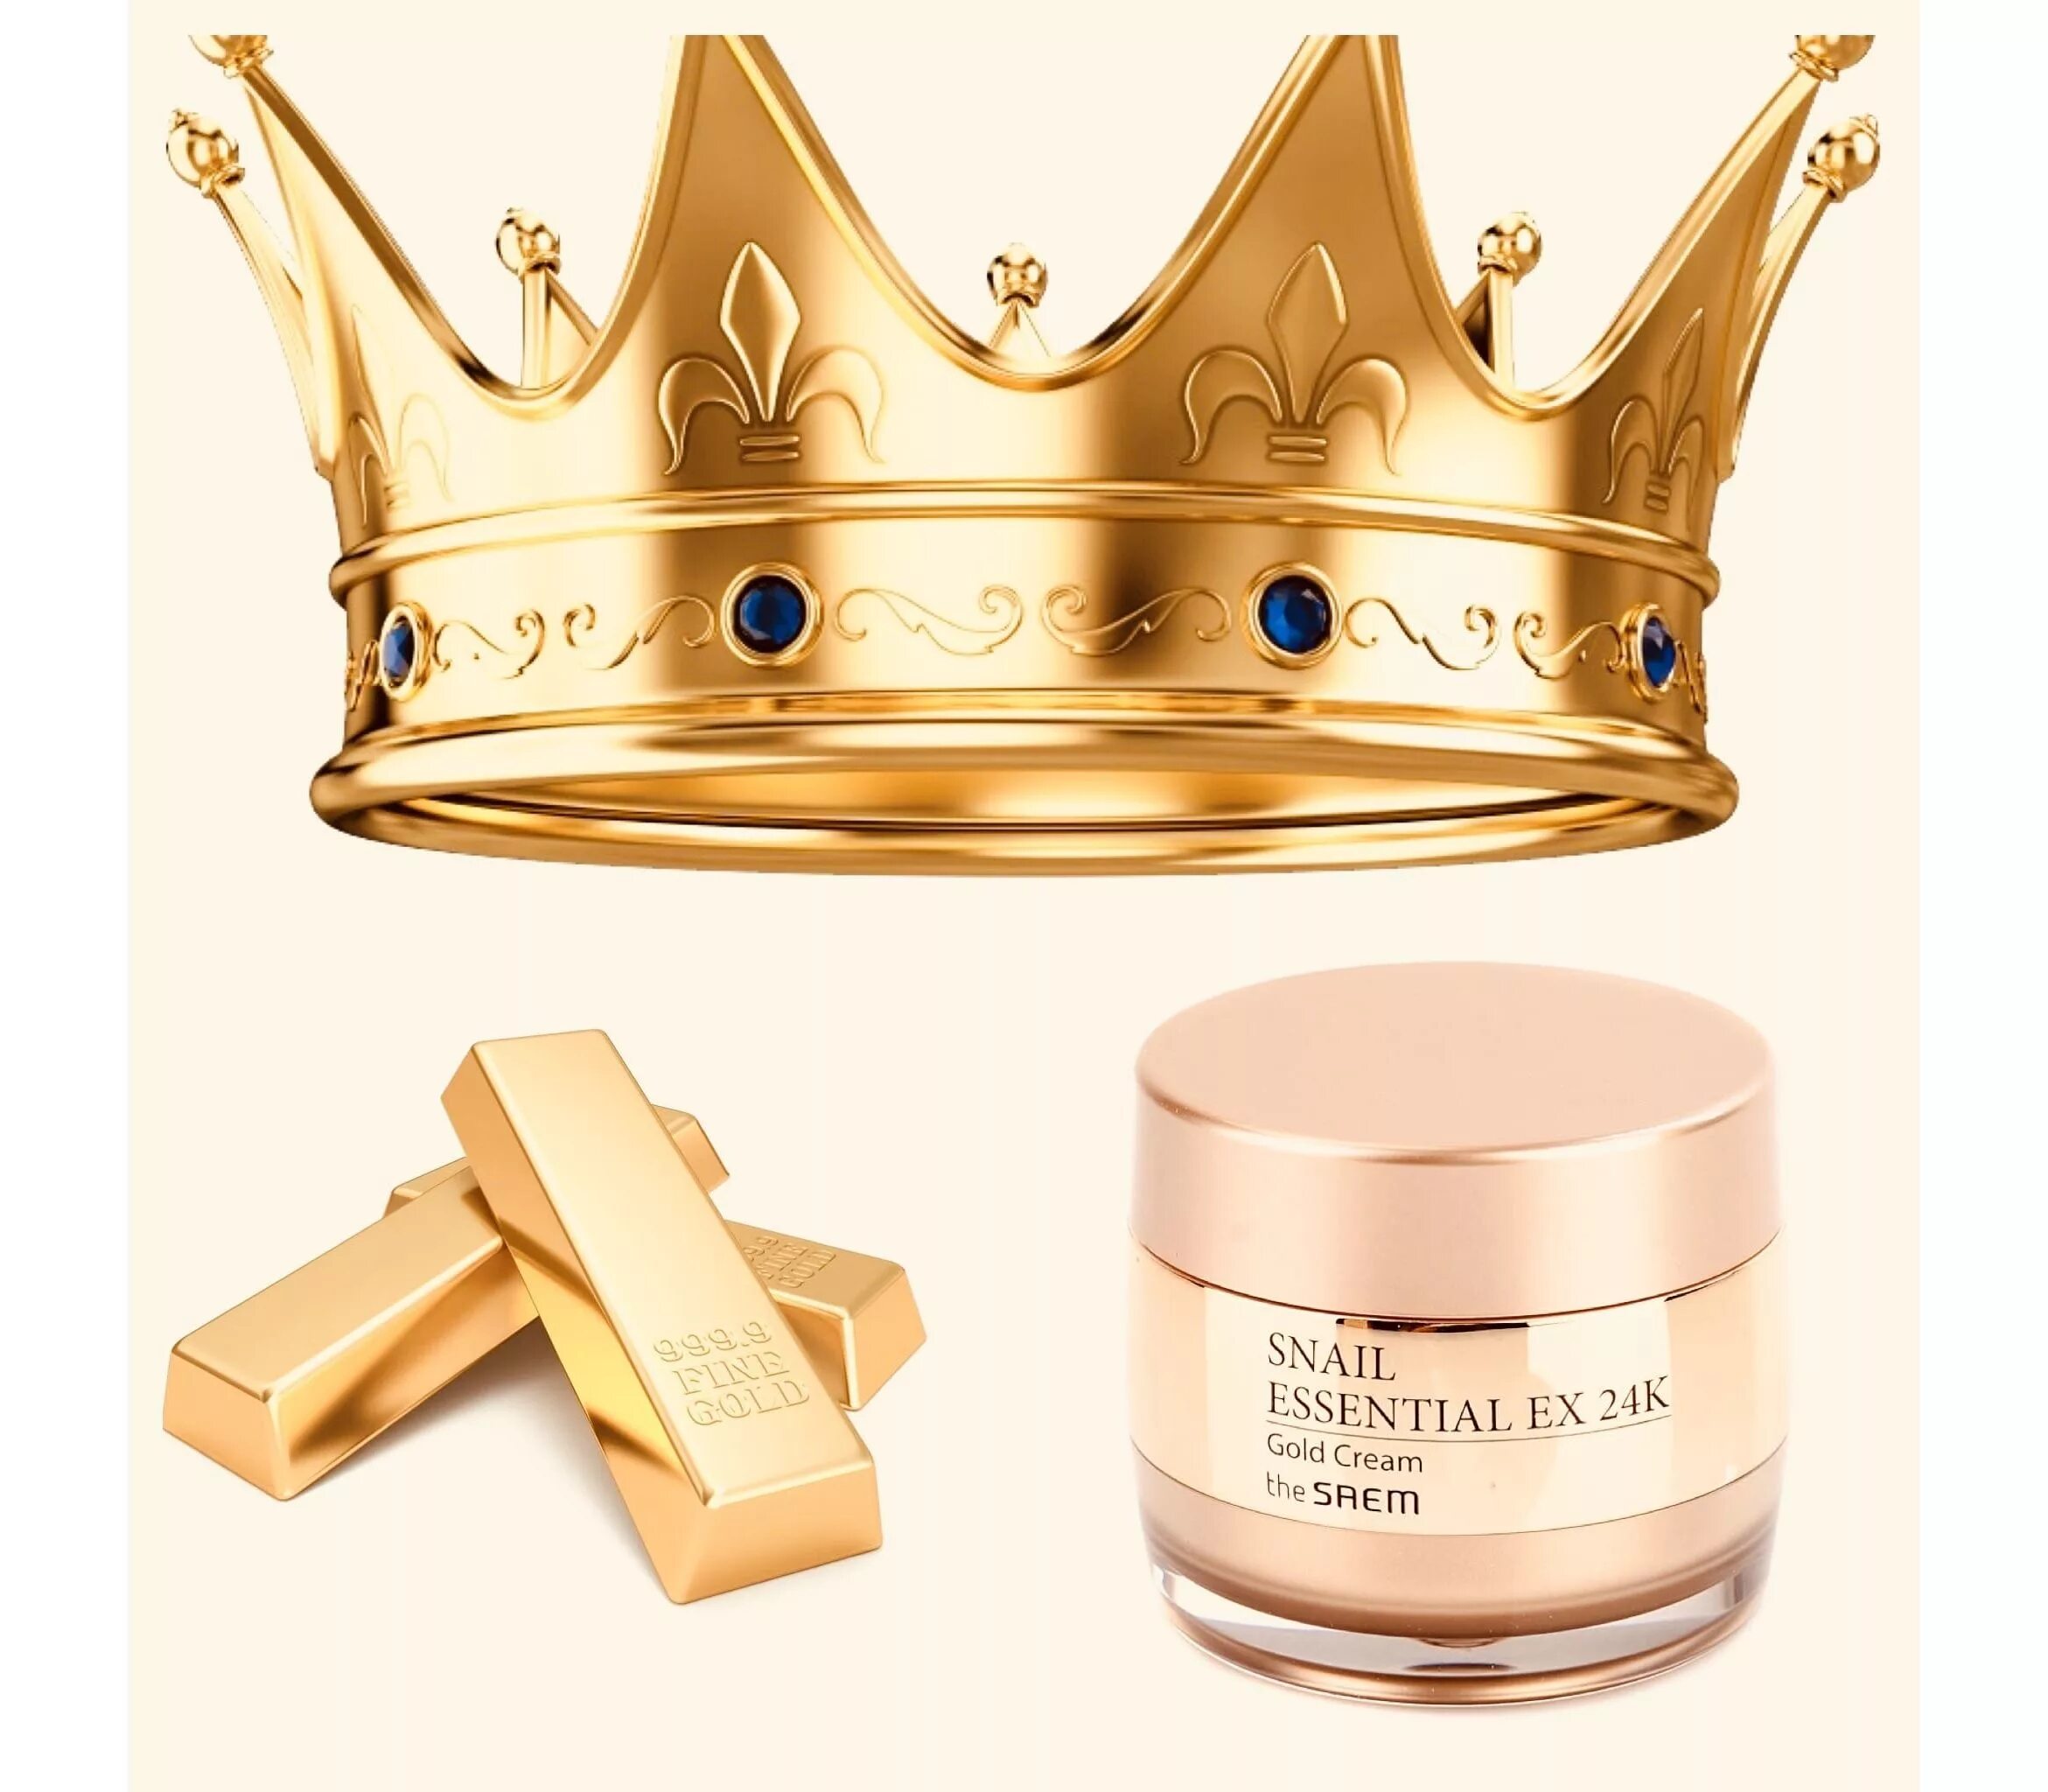 Крем в золотой упаковке. Корейская косметика 24k Gold. 24 K Gold Crown. Корейский крем 24k Gold. Корейская косметика Reice Gold Cream.